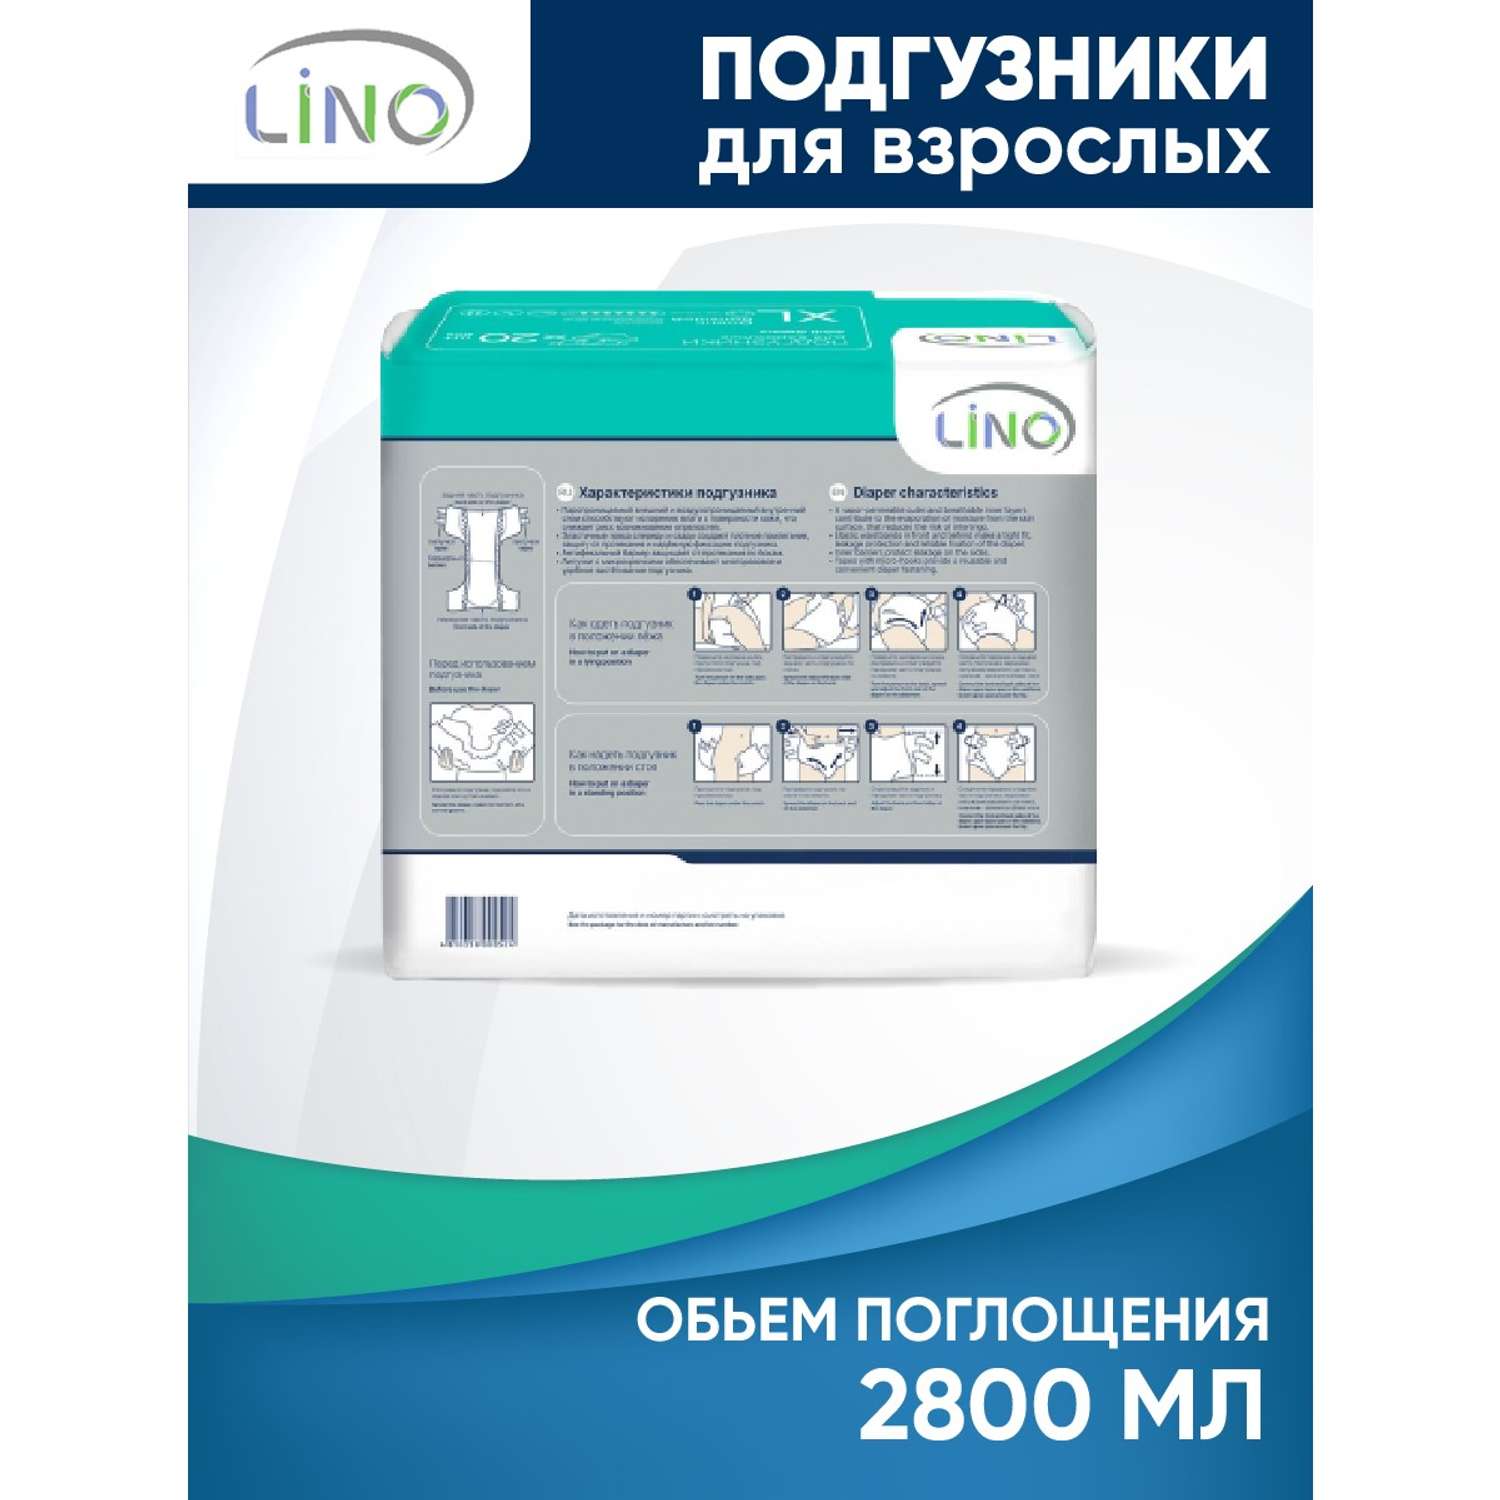 Подгузники для взрослых LINO XL (Extra Large) 2800 мл 20 шт - фото 3